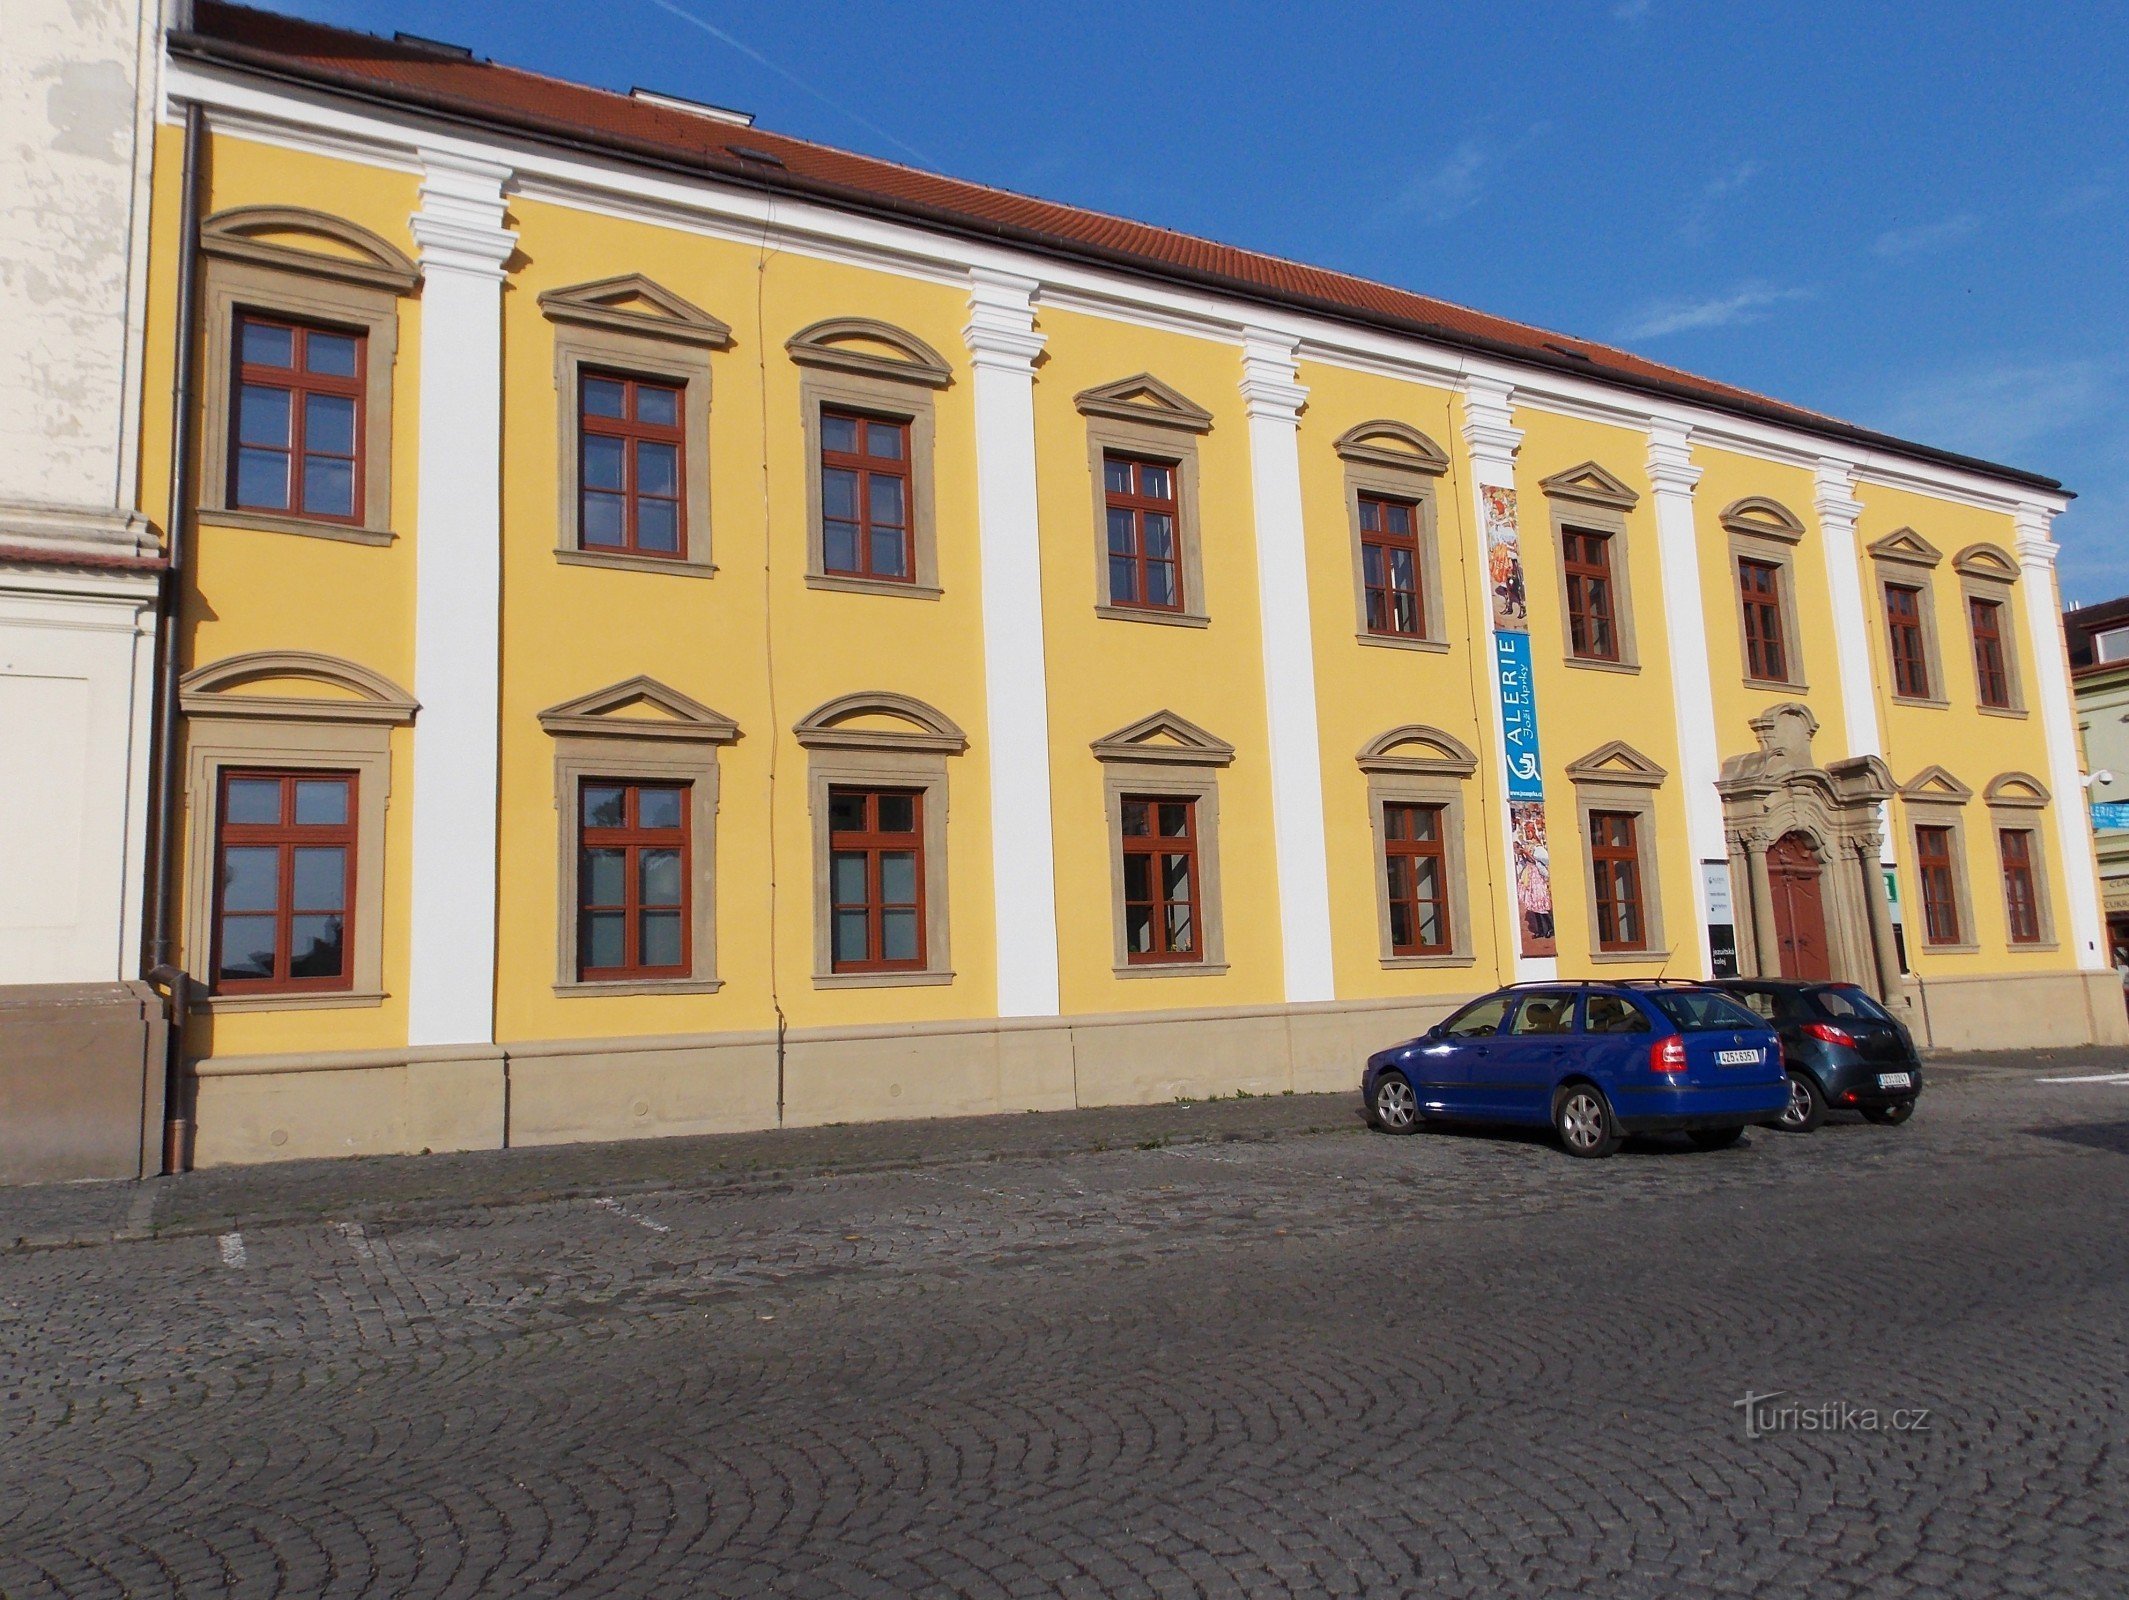 Σλοβακικό Κέντρο Πολιτισμού και Παραδόσεων στο Uh. Hradišti